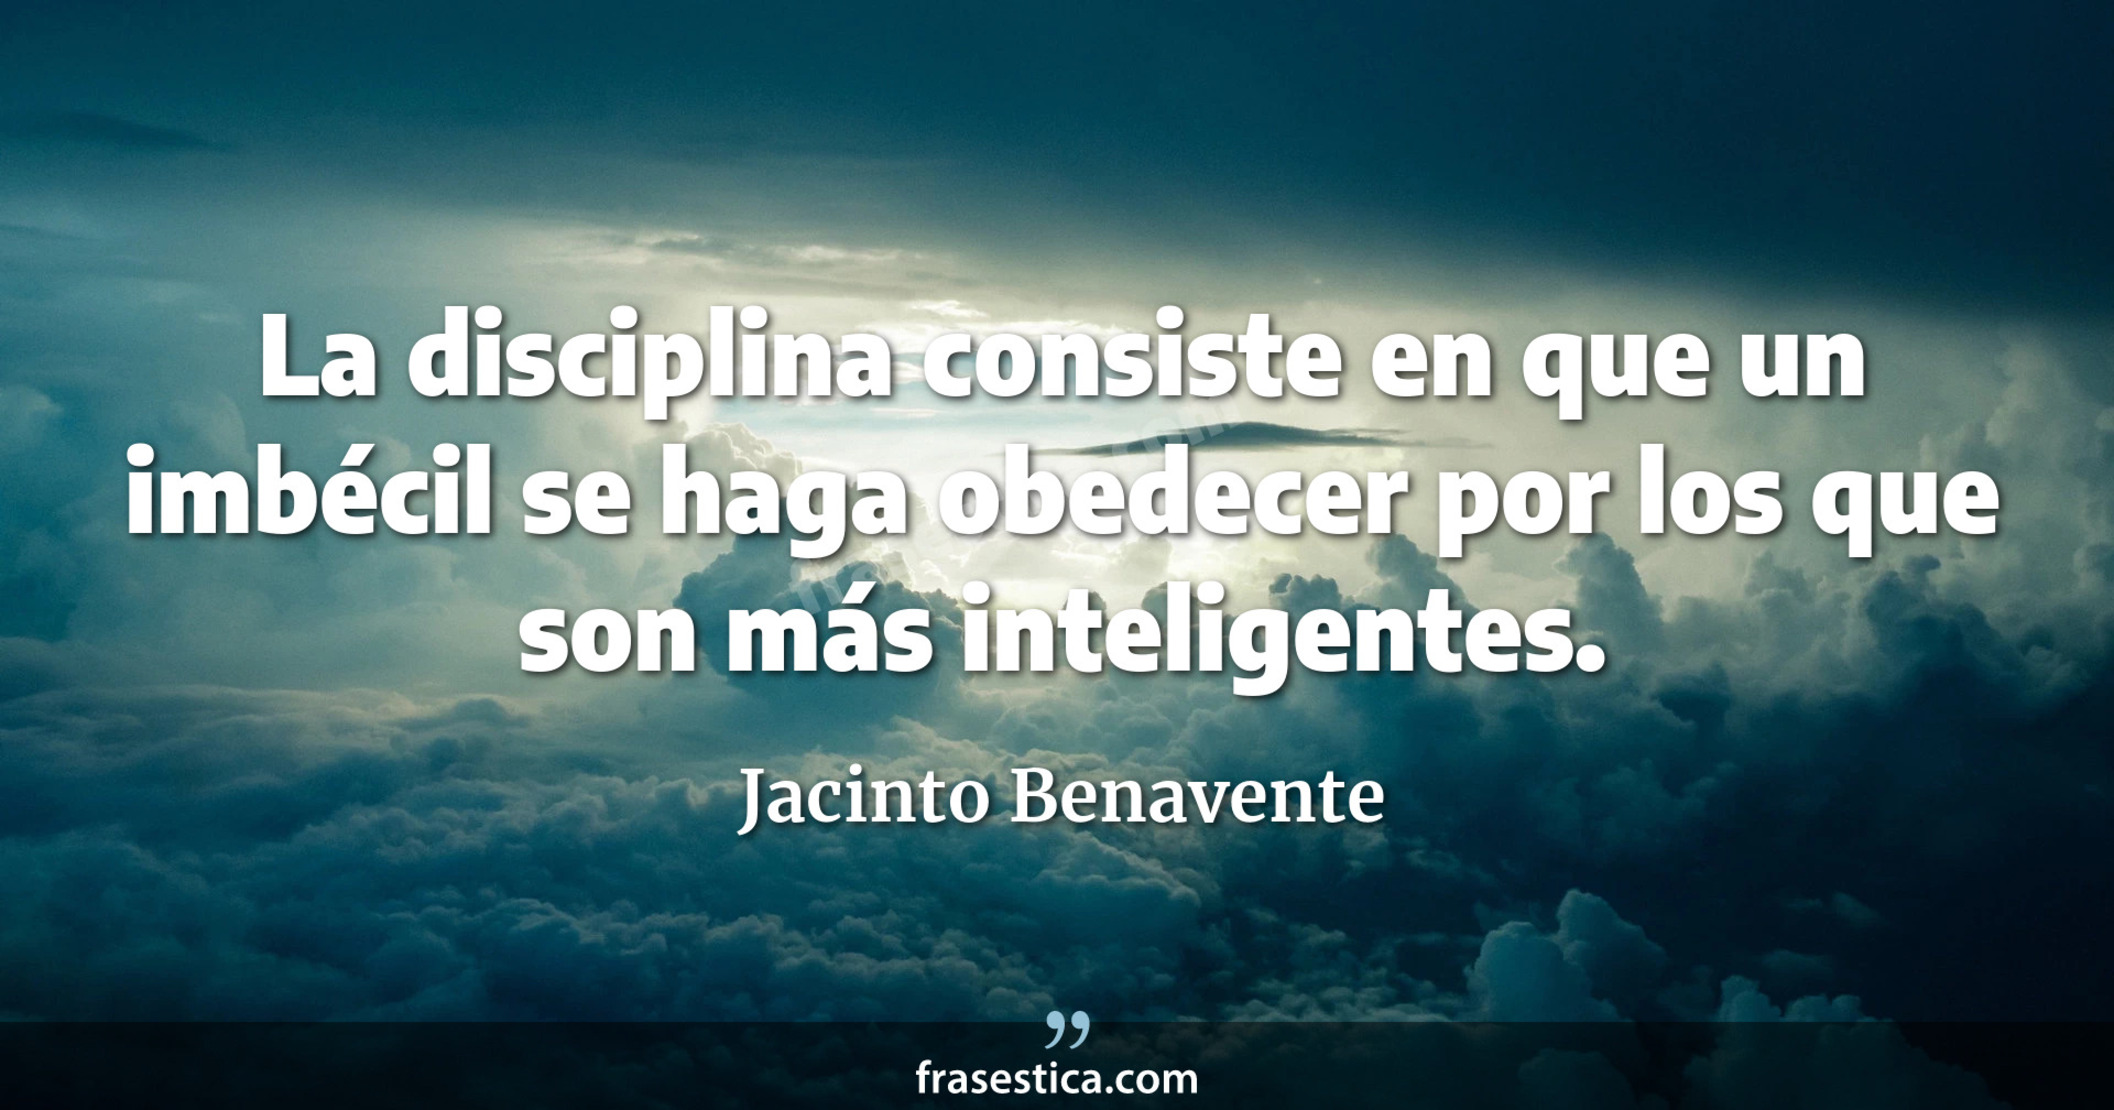 La disciplina consiste en que un imbécil se haga obedecer por los que son más inteligentes. - Jacinto Benavente